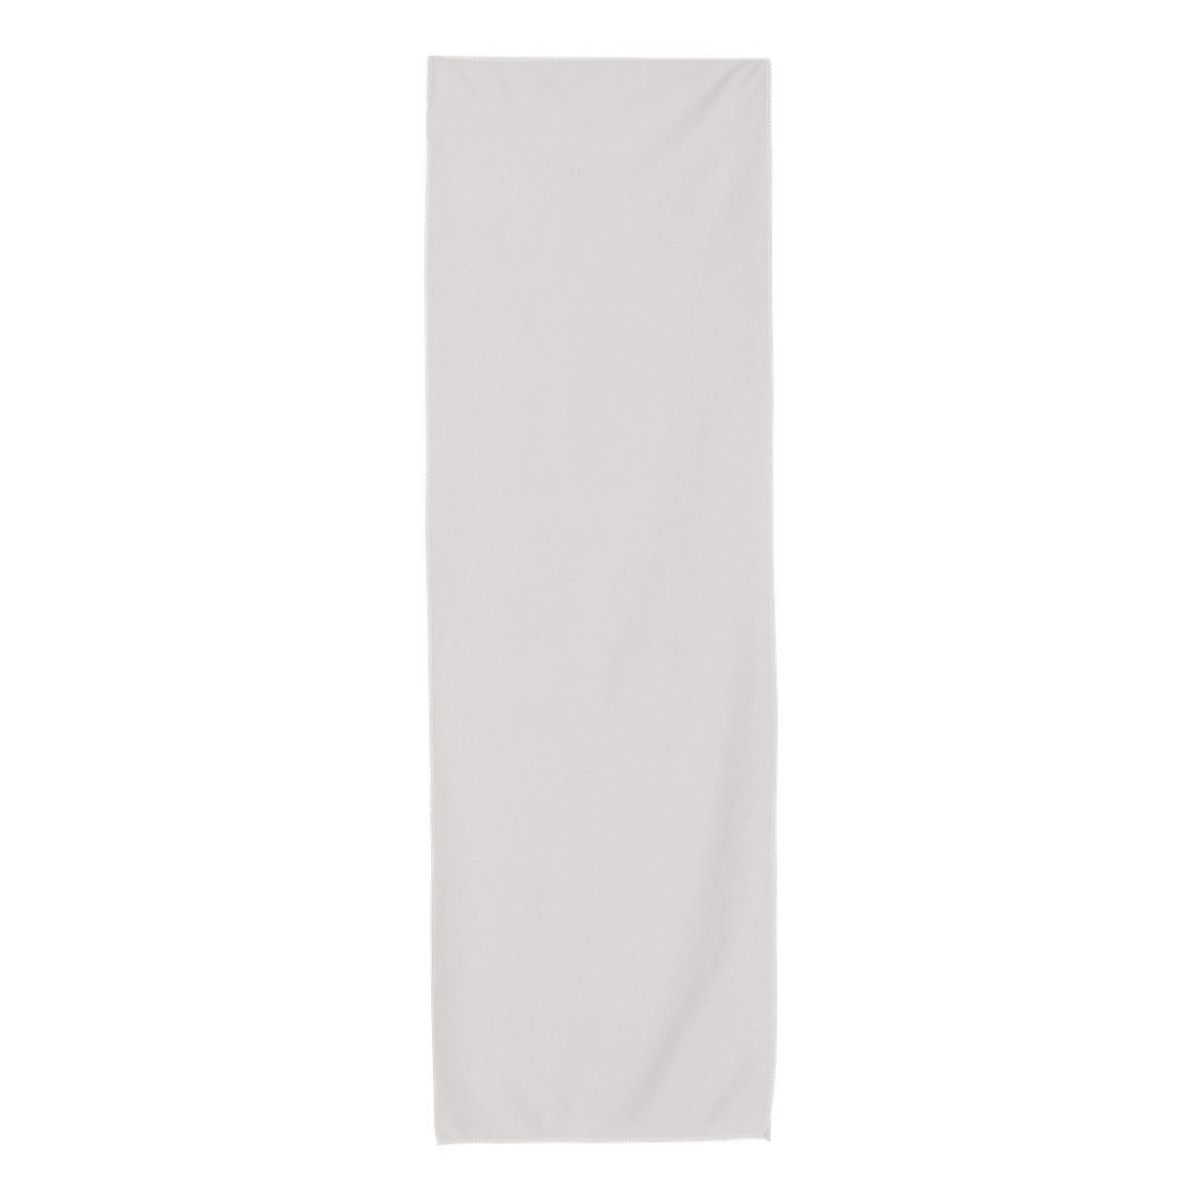 Carmel Towel Company Холодное полотенце, серый